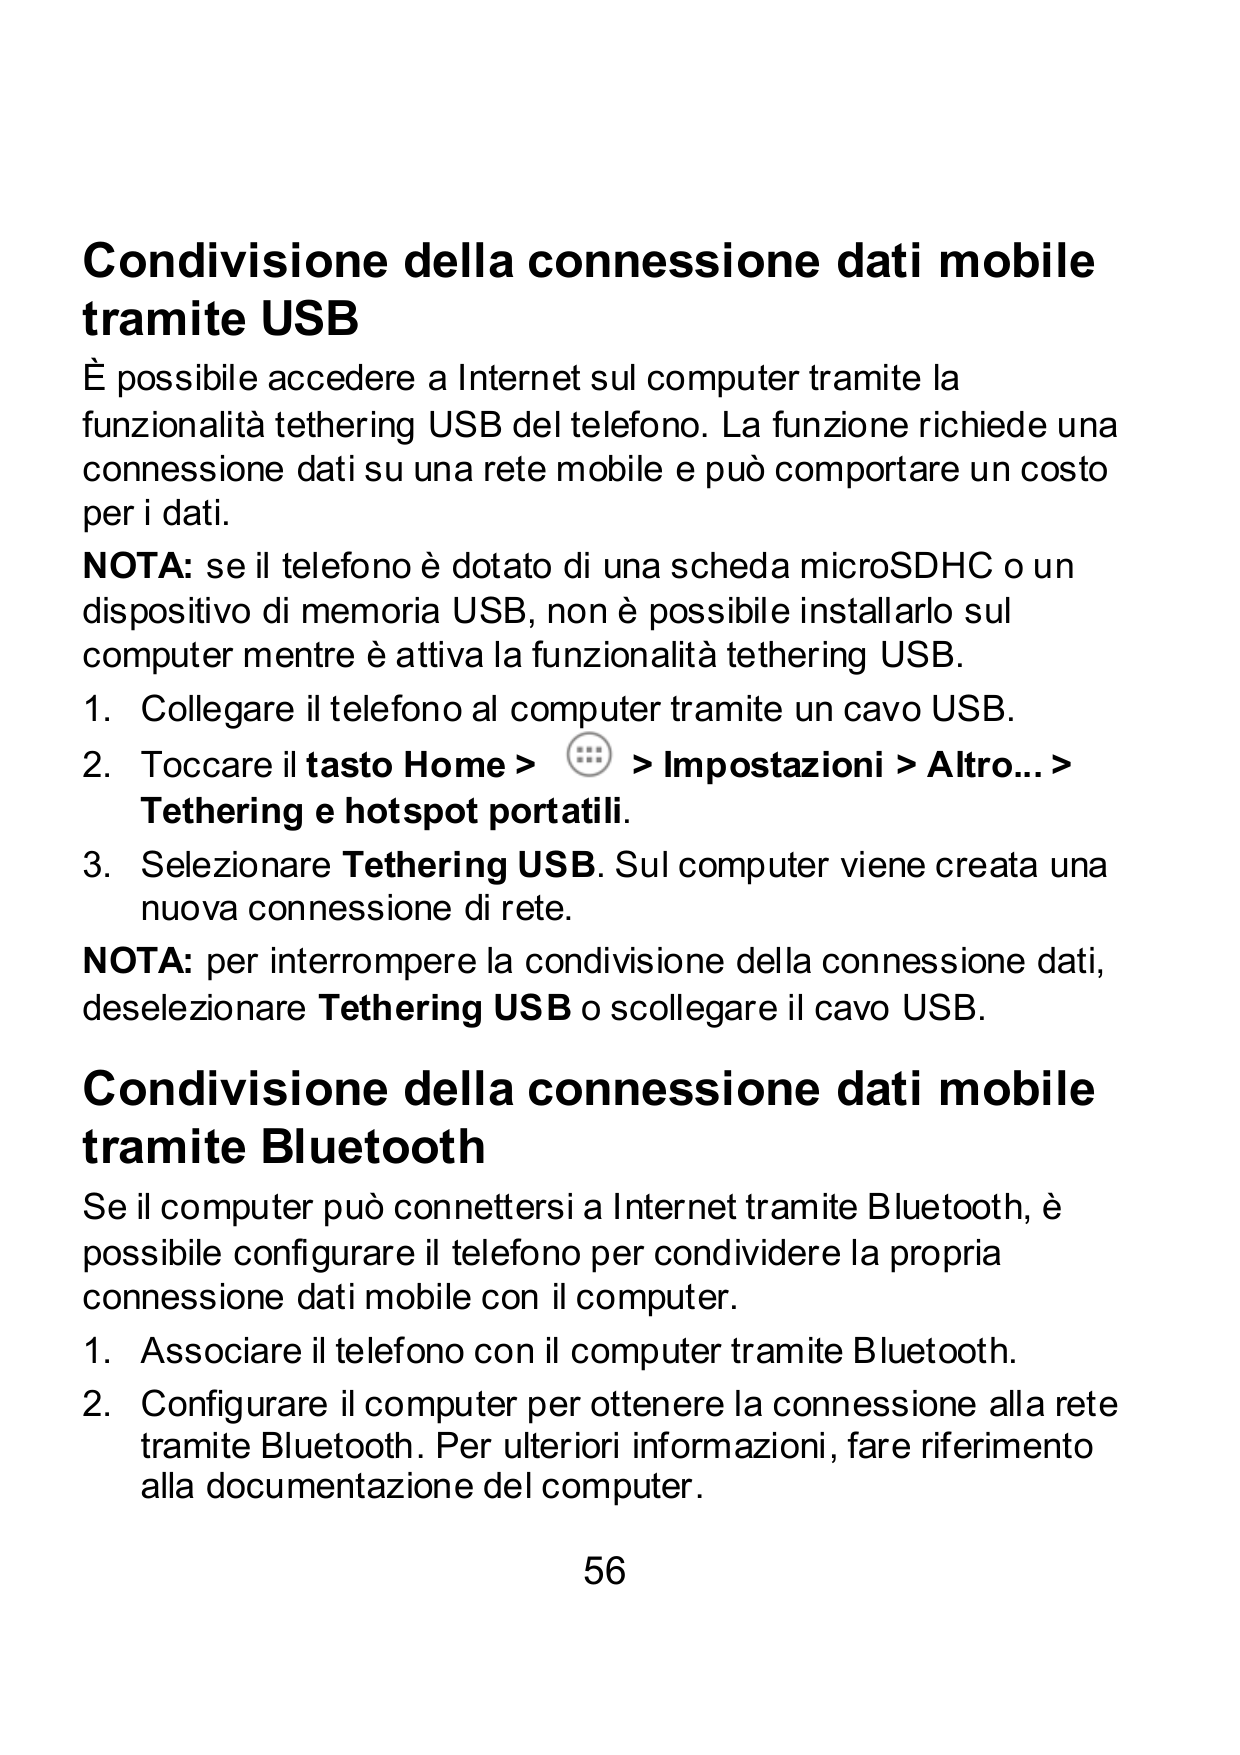 Condivisione della connessione dati mobiletramite USBÈ possibile accedere a Internet sul computer tramite lafunzionalità tetheri